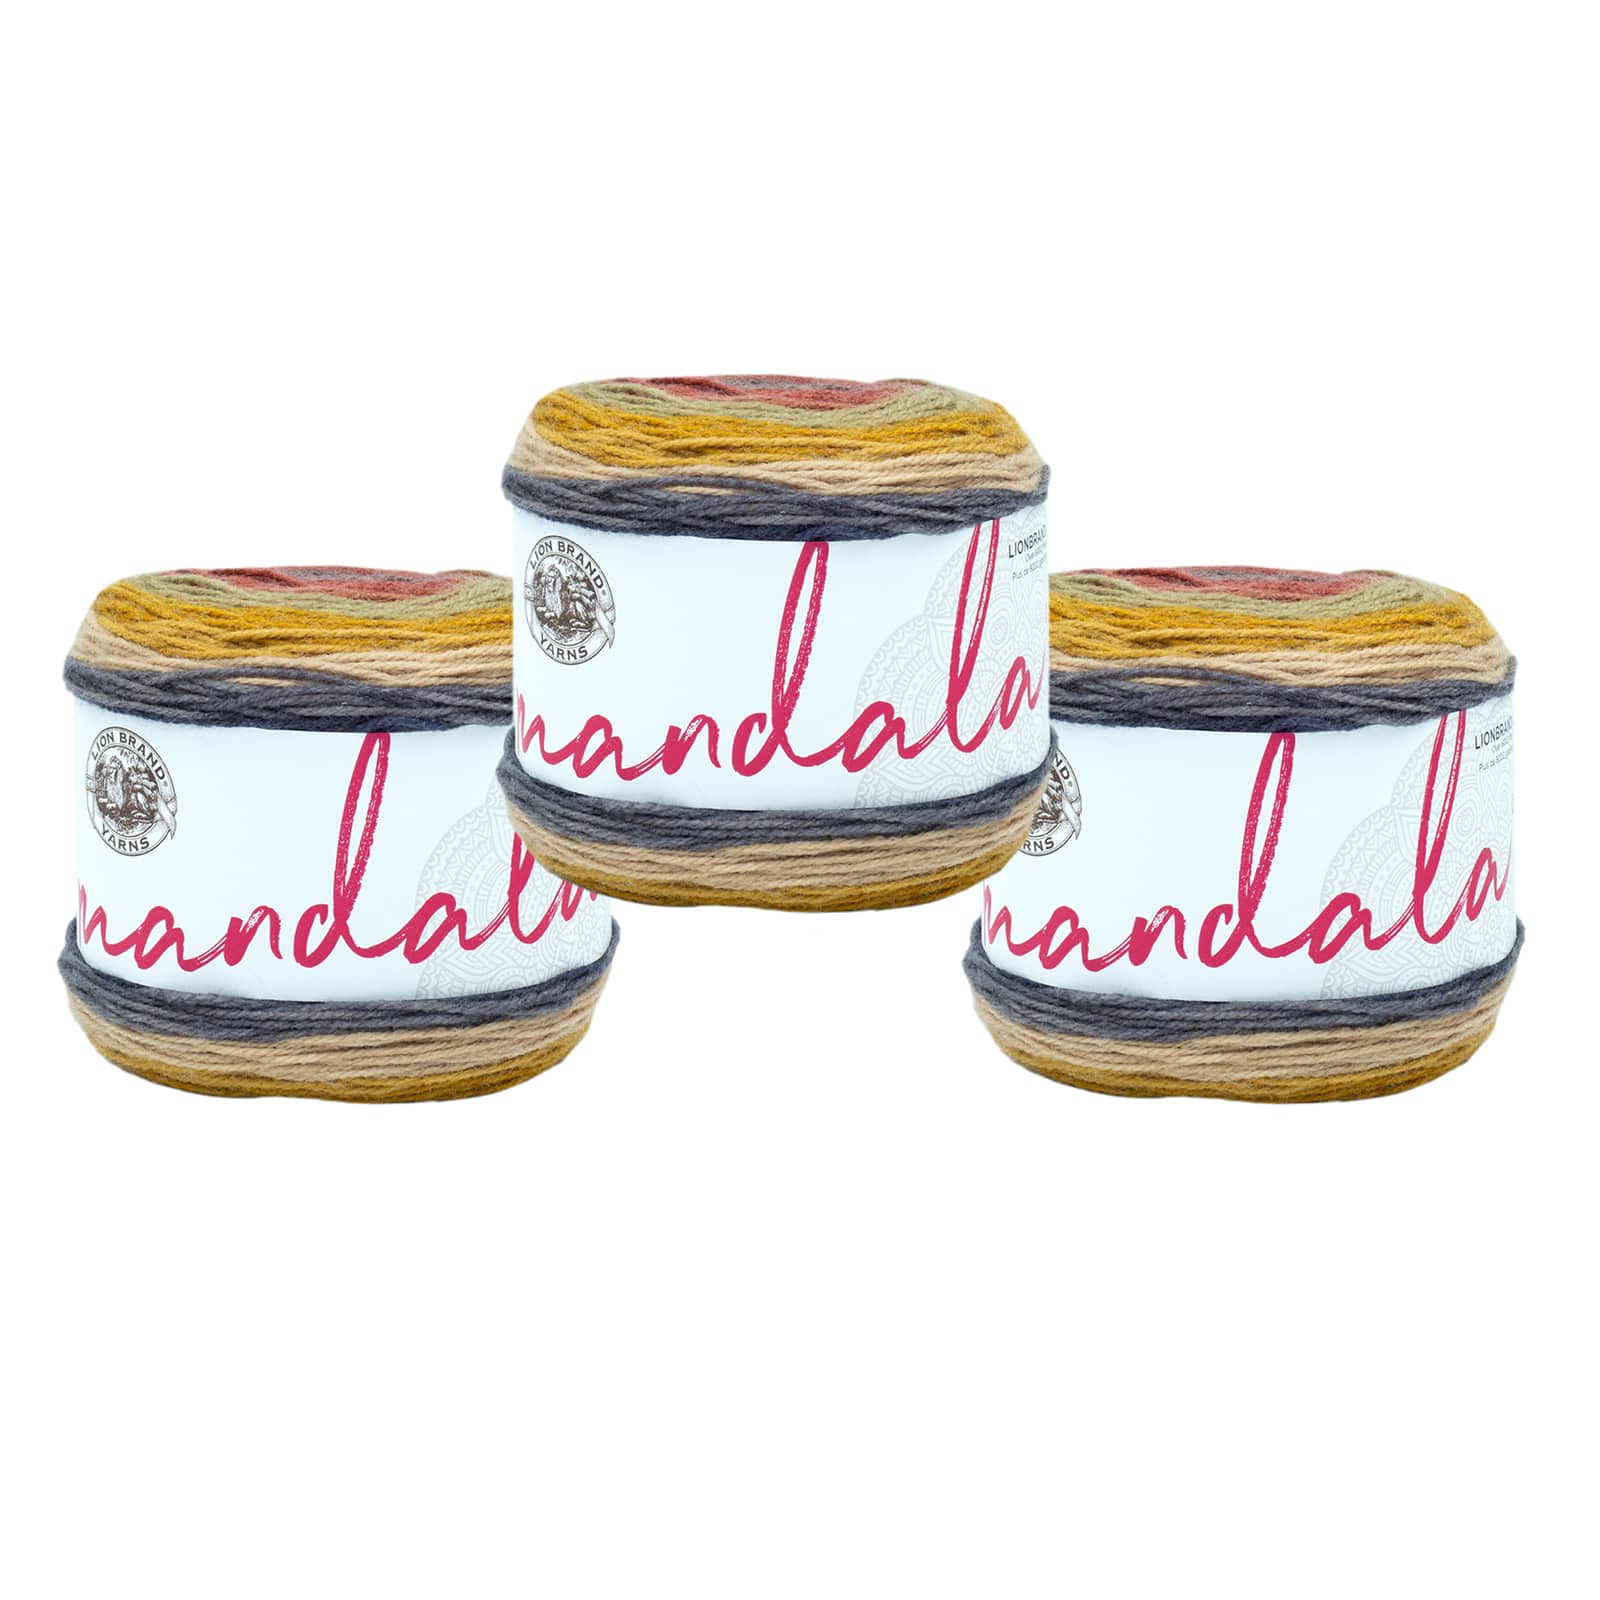 Lion Brand Mandala Yarn Cakes